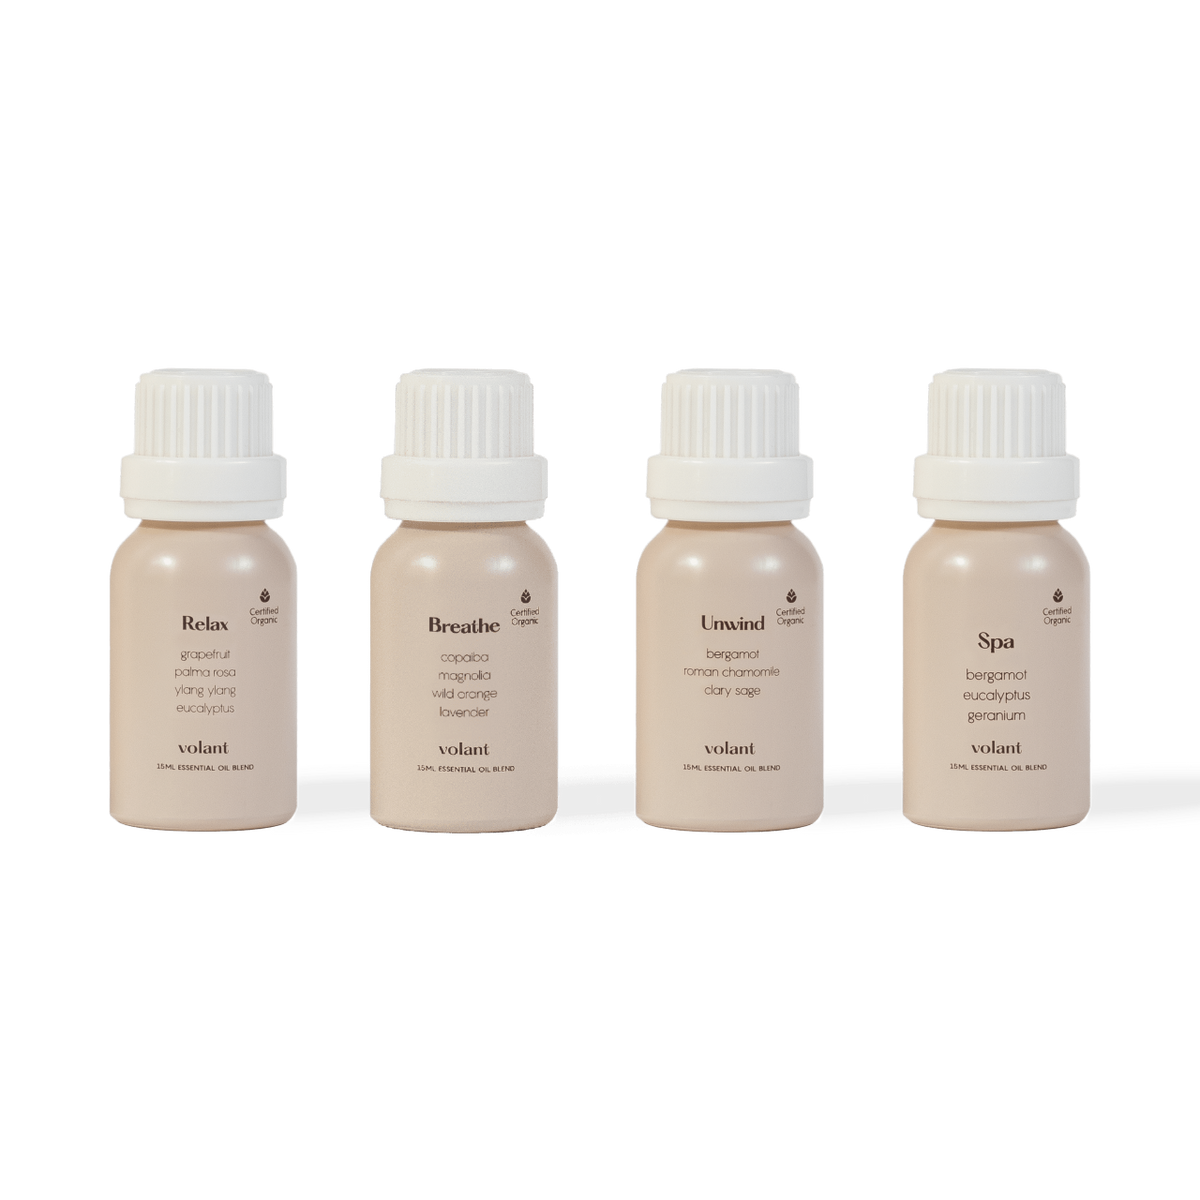 Magnolia Essential Oil 100% Pure Organic Therapeutic Grade Magnolia Oil for  Diffuser, Sleep, Perfume, Massage, Skin Care, Aromatherapy, Bath - 10ML 